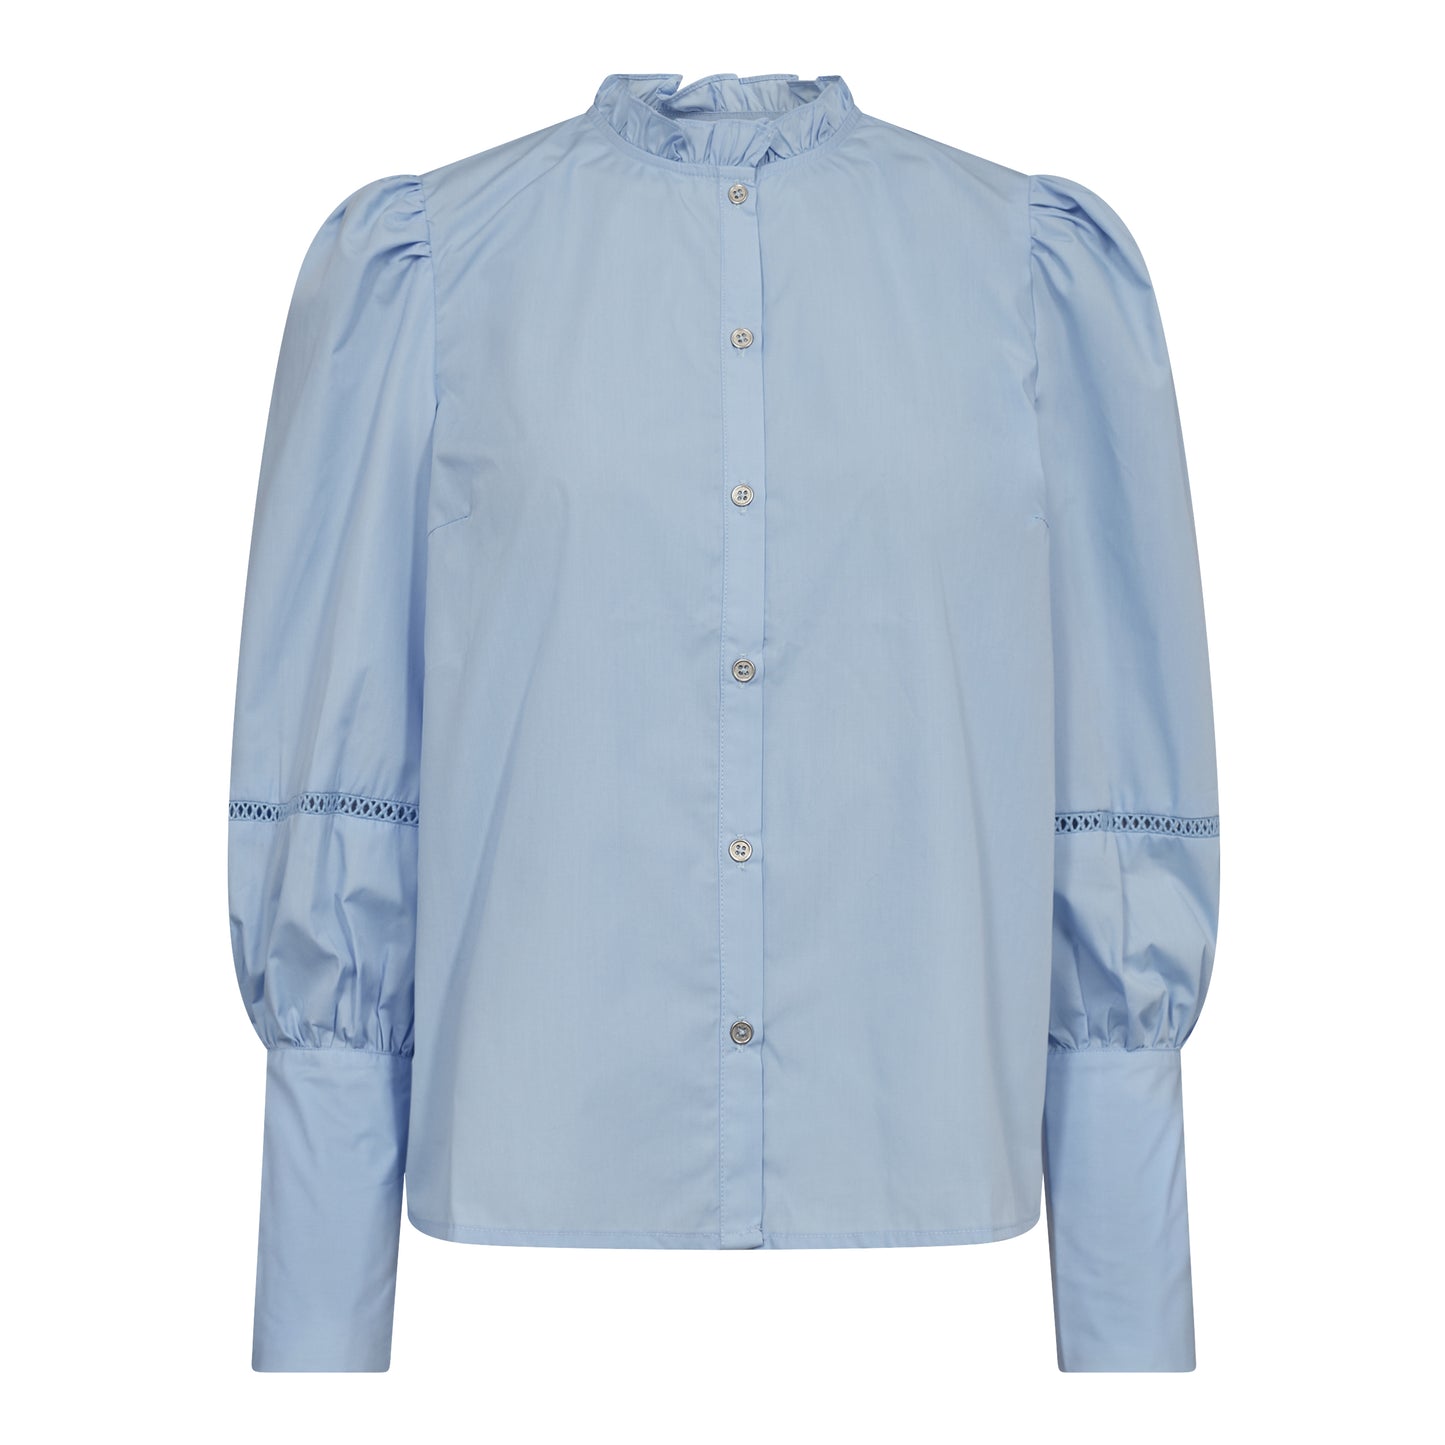 Cocouture - BonnieCC Lace Sleeve Shirt - Pale Blue